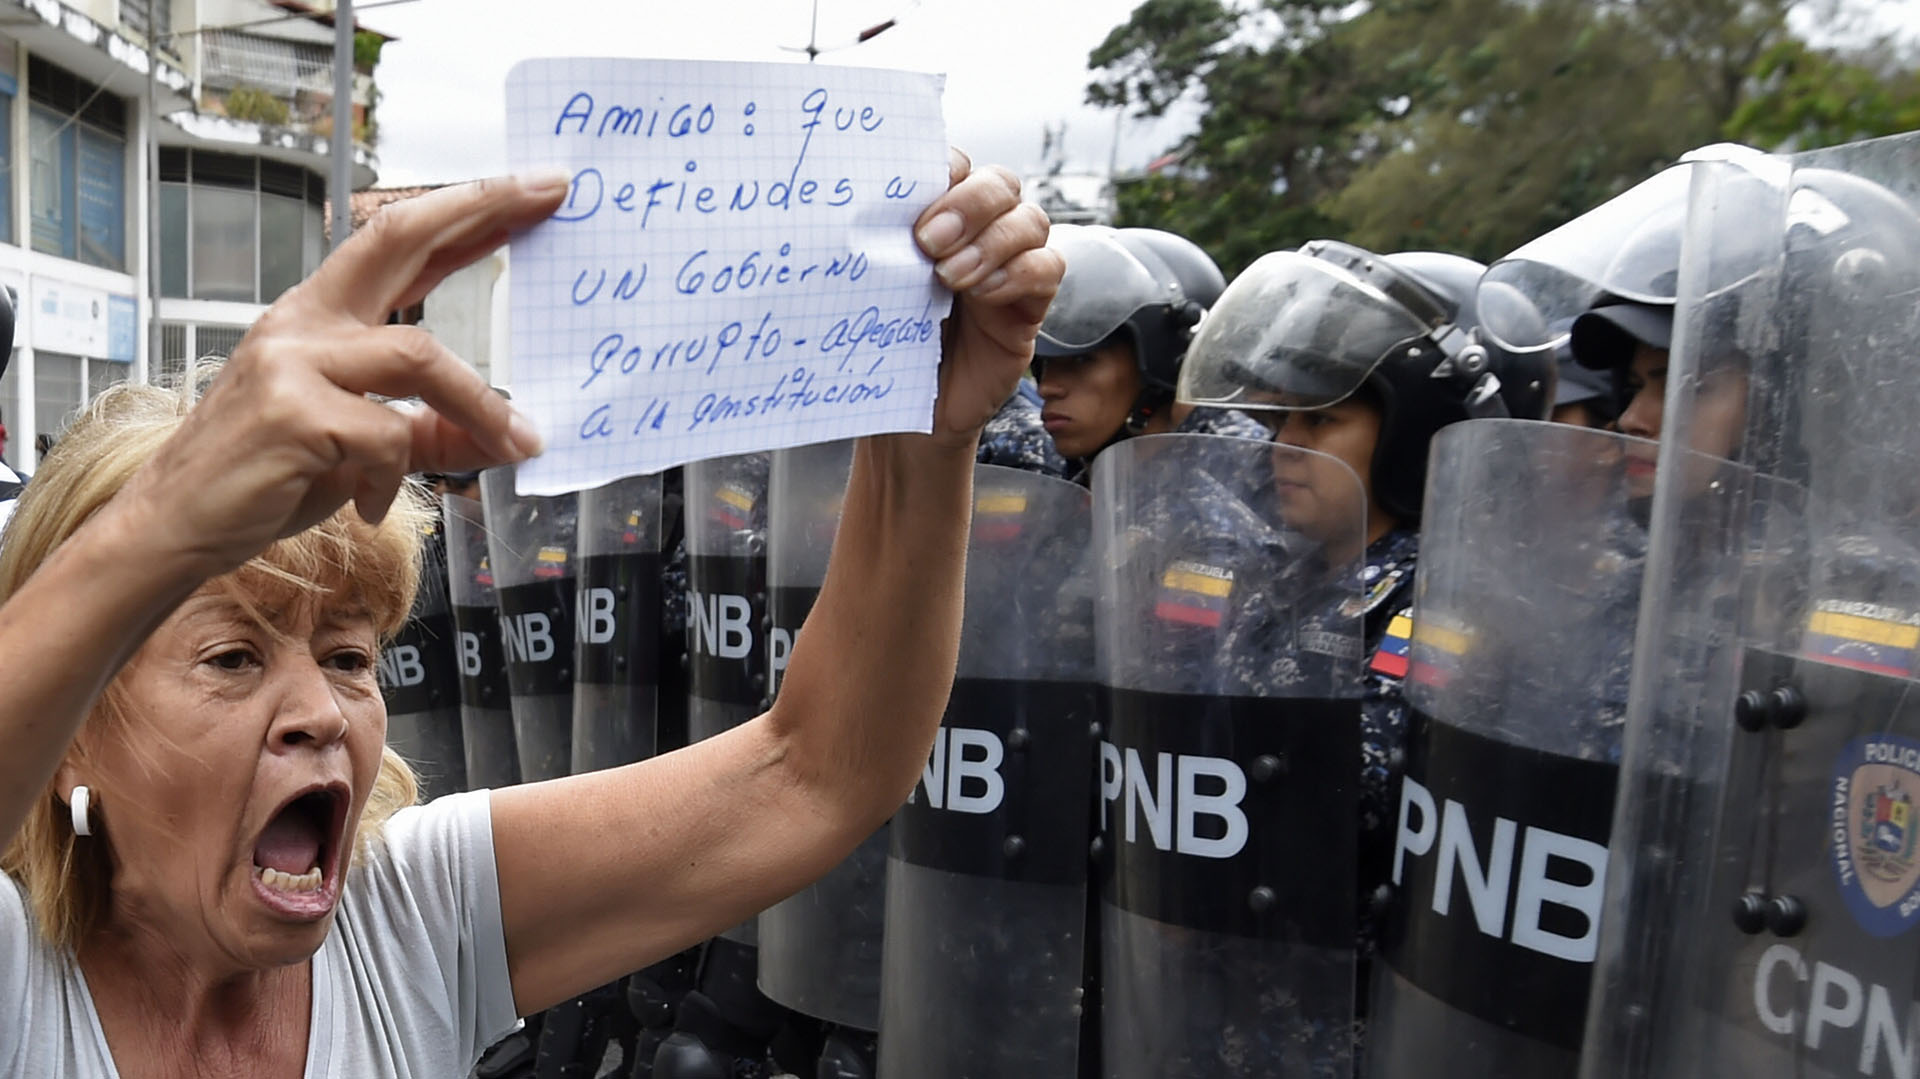 Los venezolanos piden a los militares que dejen de apoyar a Maduro (Photo by Juan BARRETO / AFP)